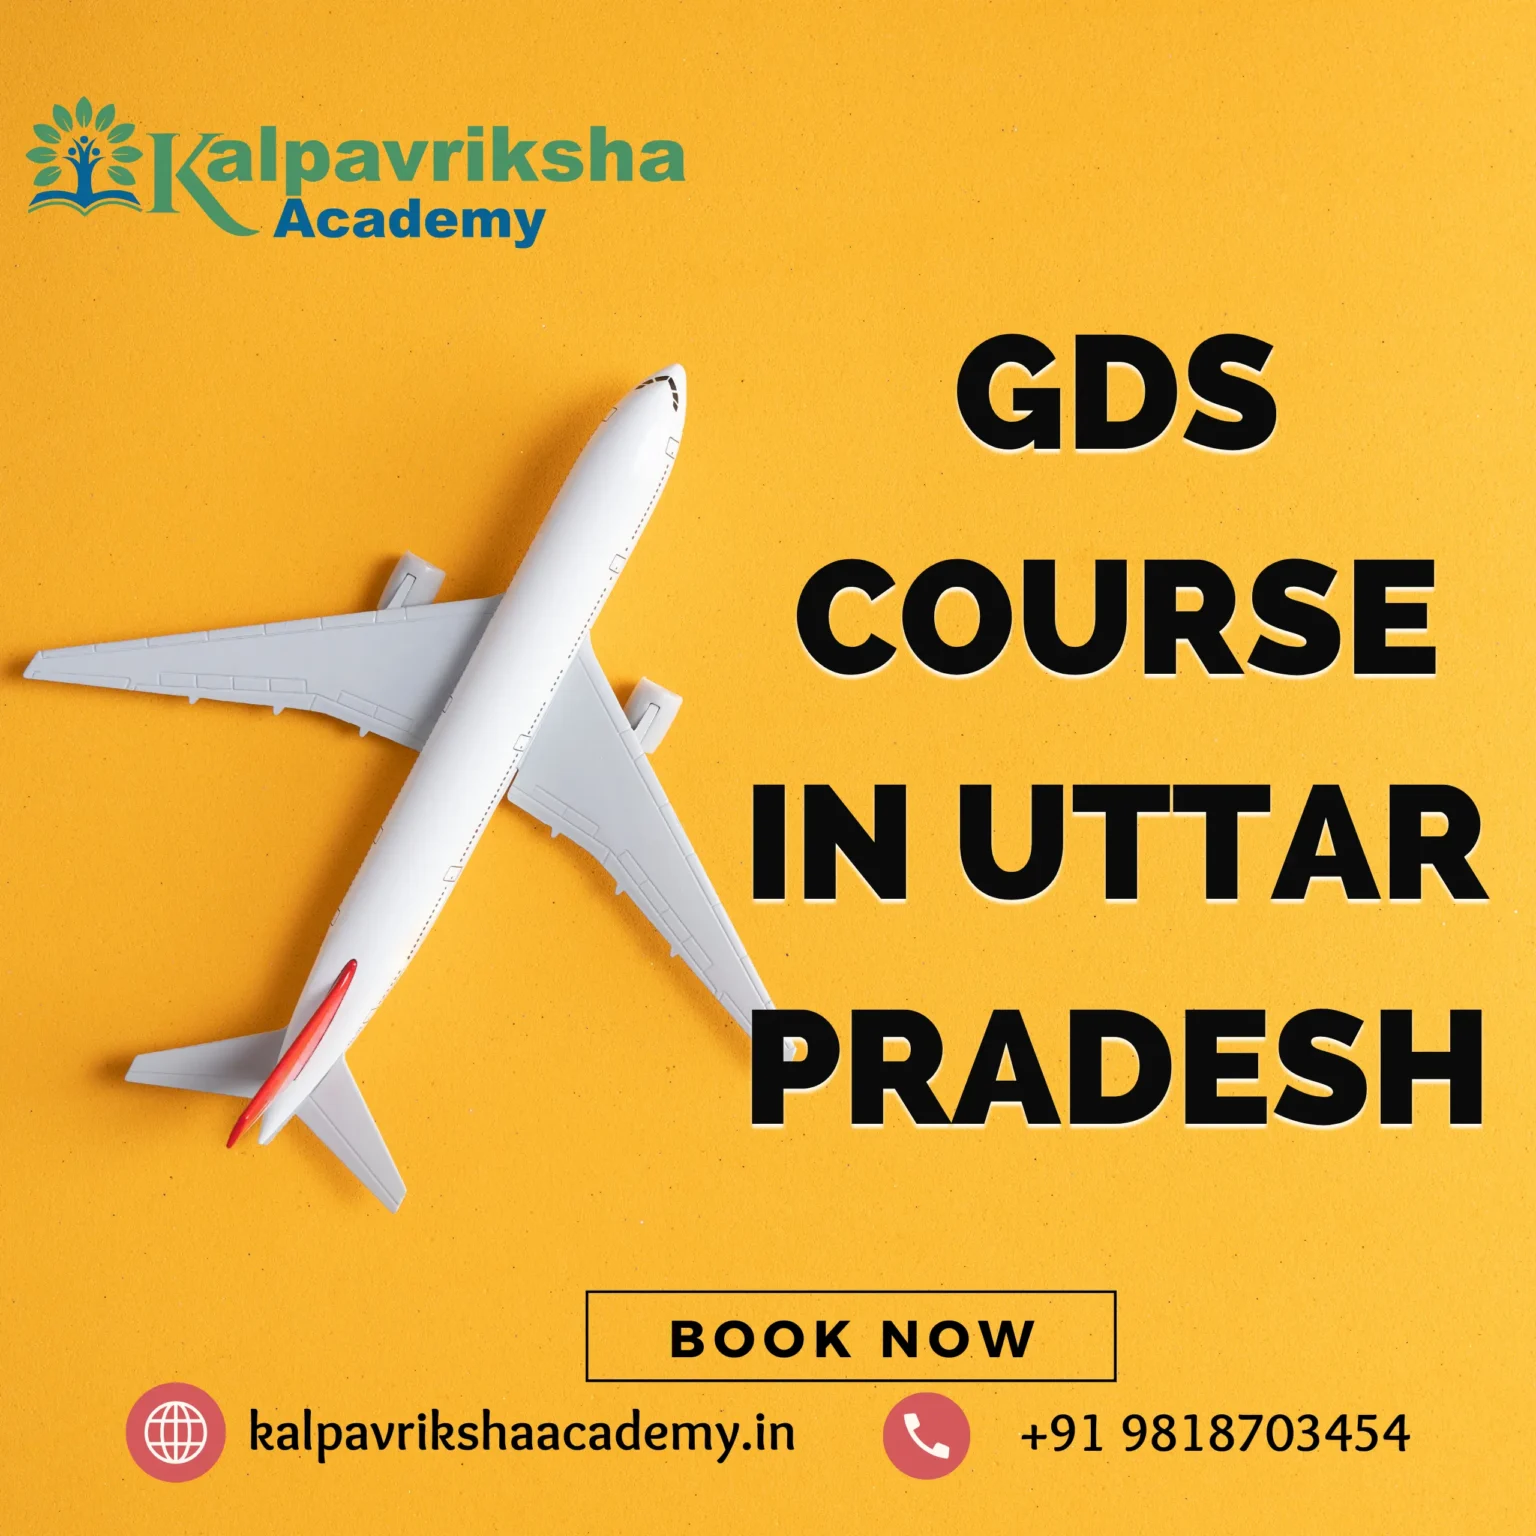 GDS Course In Uttar Pradesh - Kalpavriksha Academy